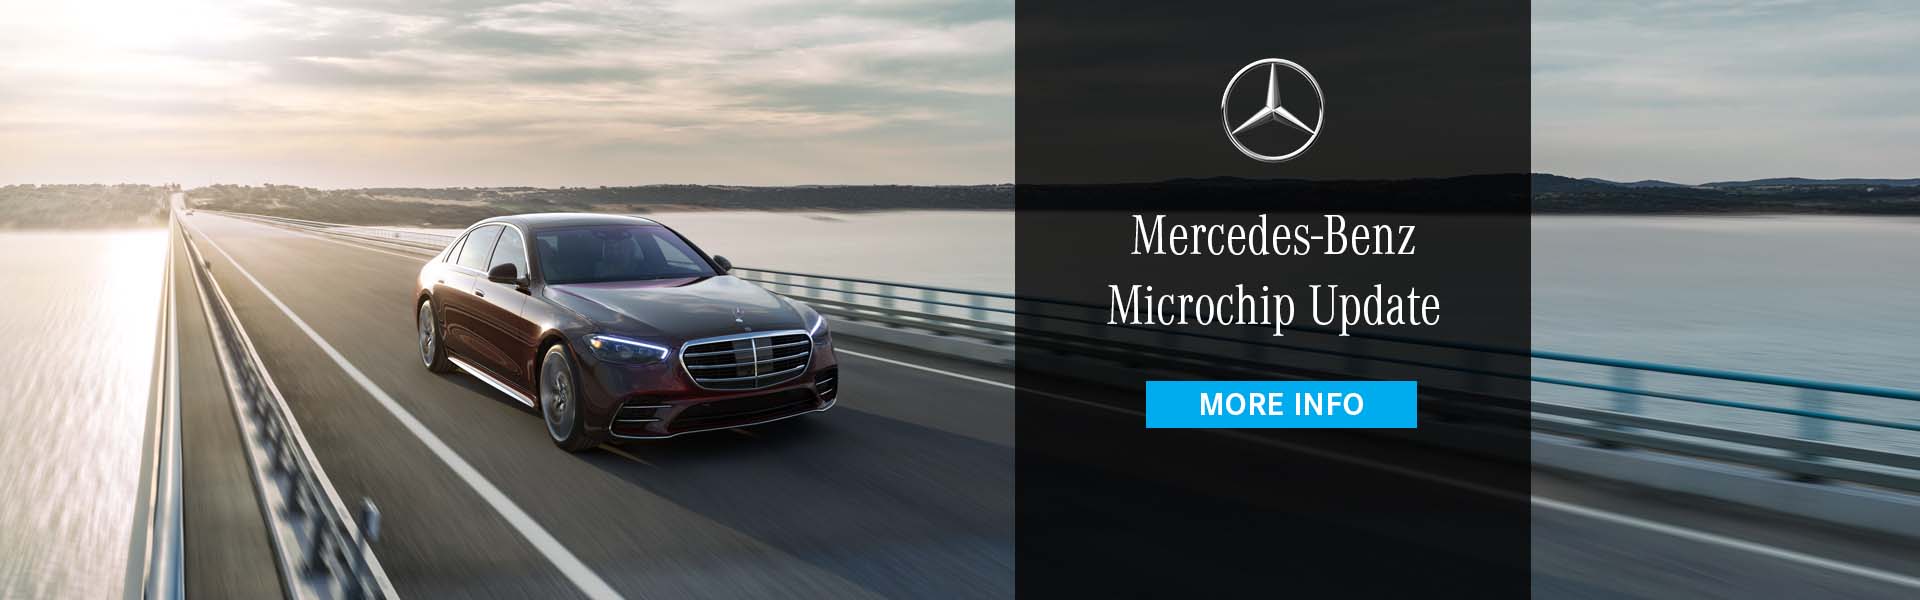 Mercedes Benz Microchip Update News